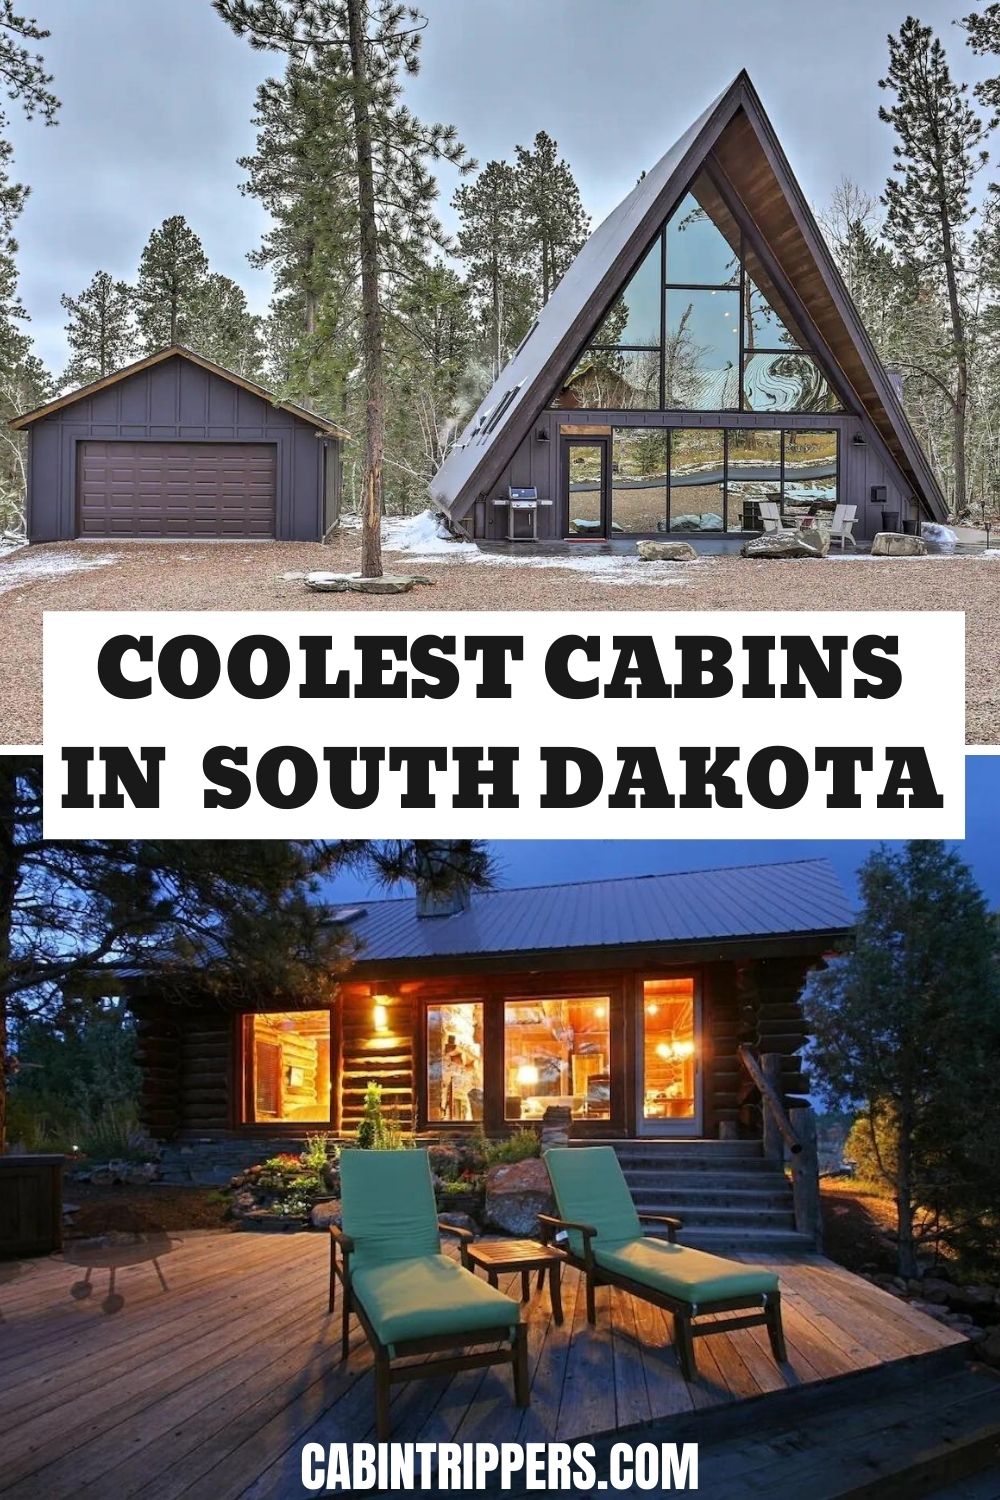 Cabins in South Dakota